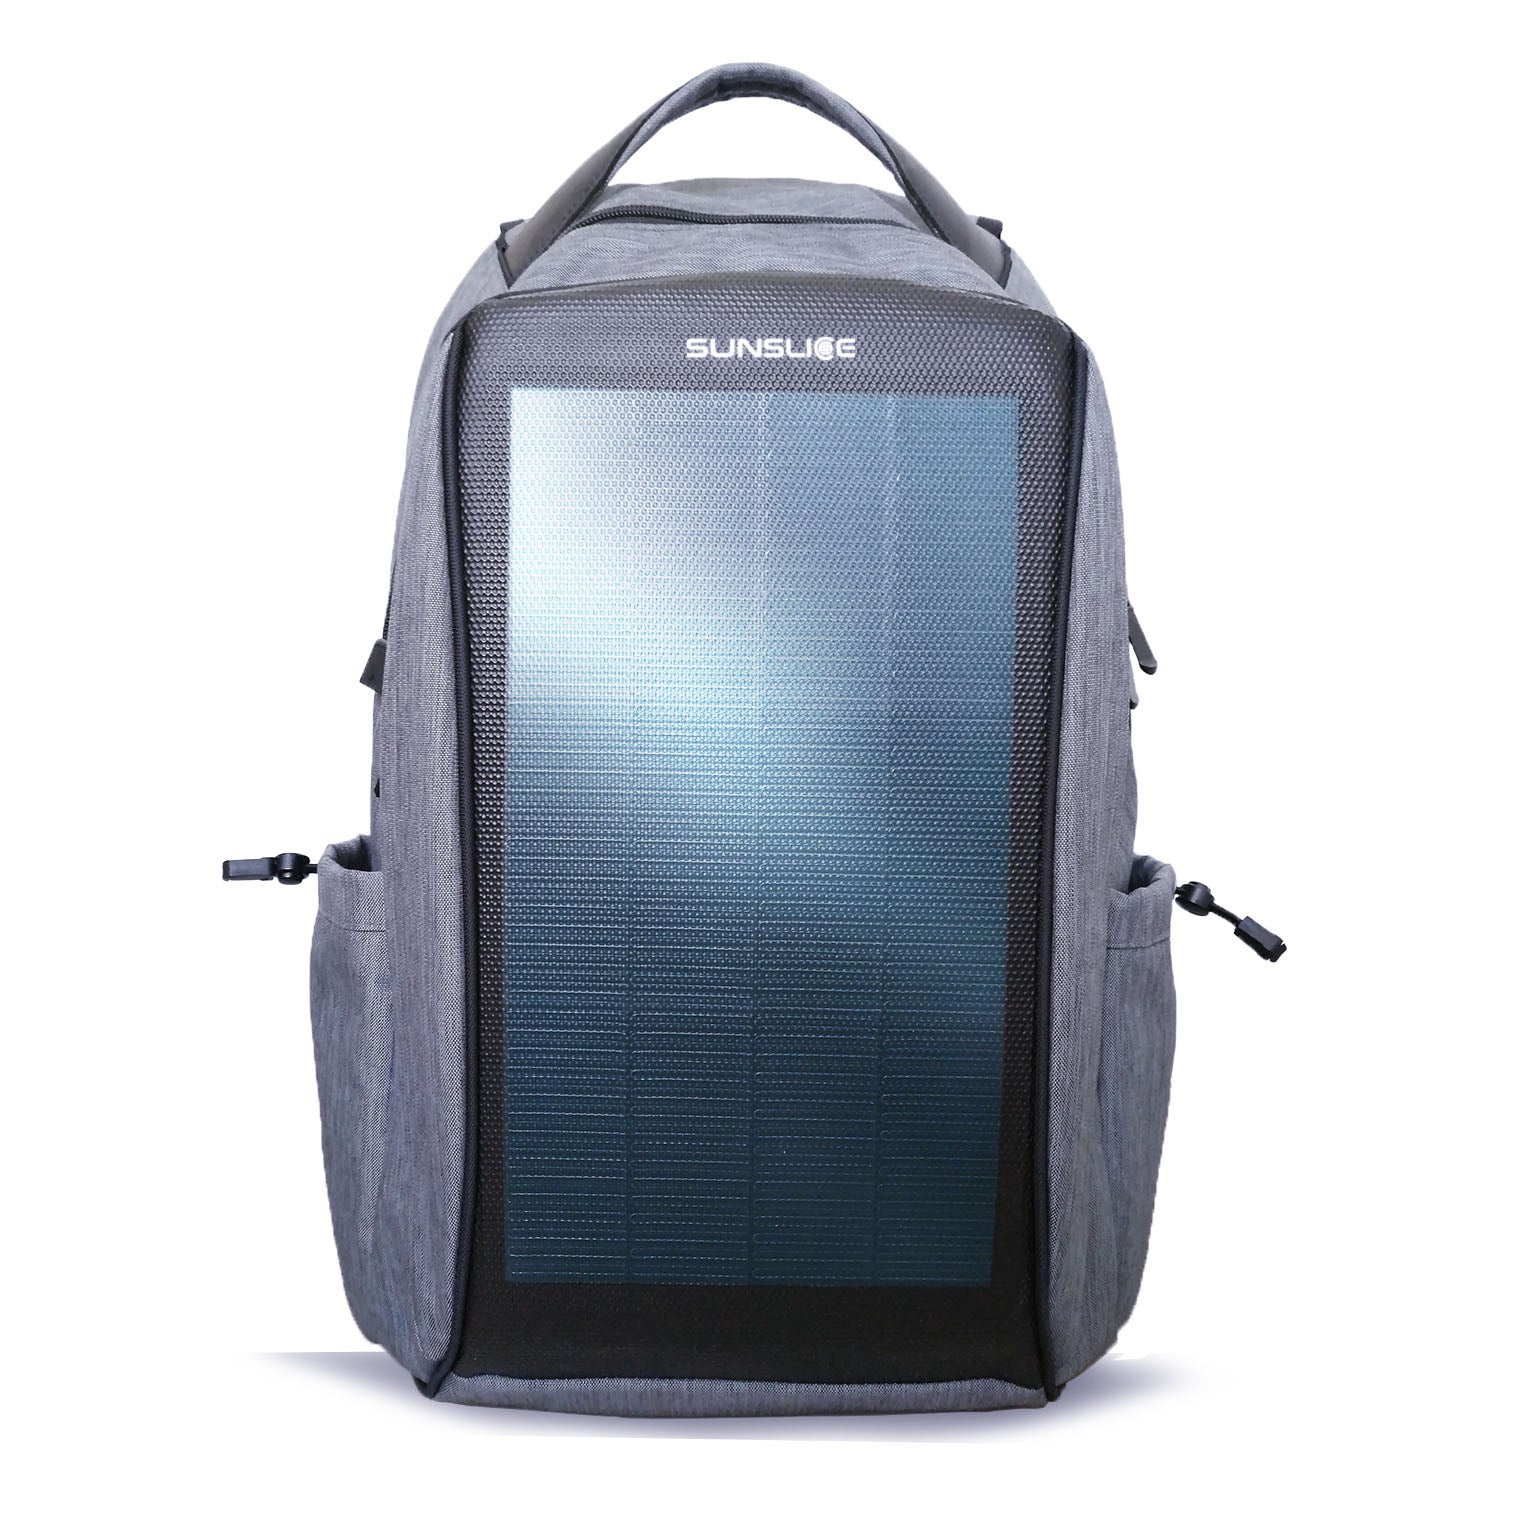 Zenith - Solar Backpack - Sunslice